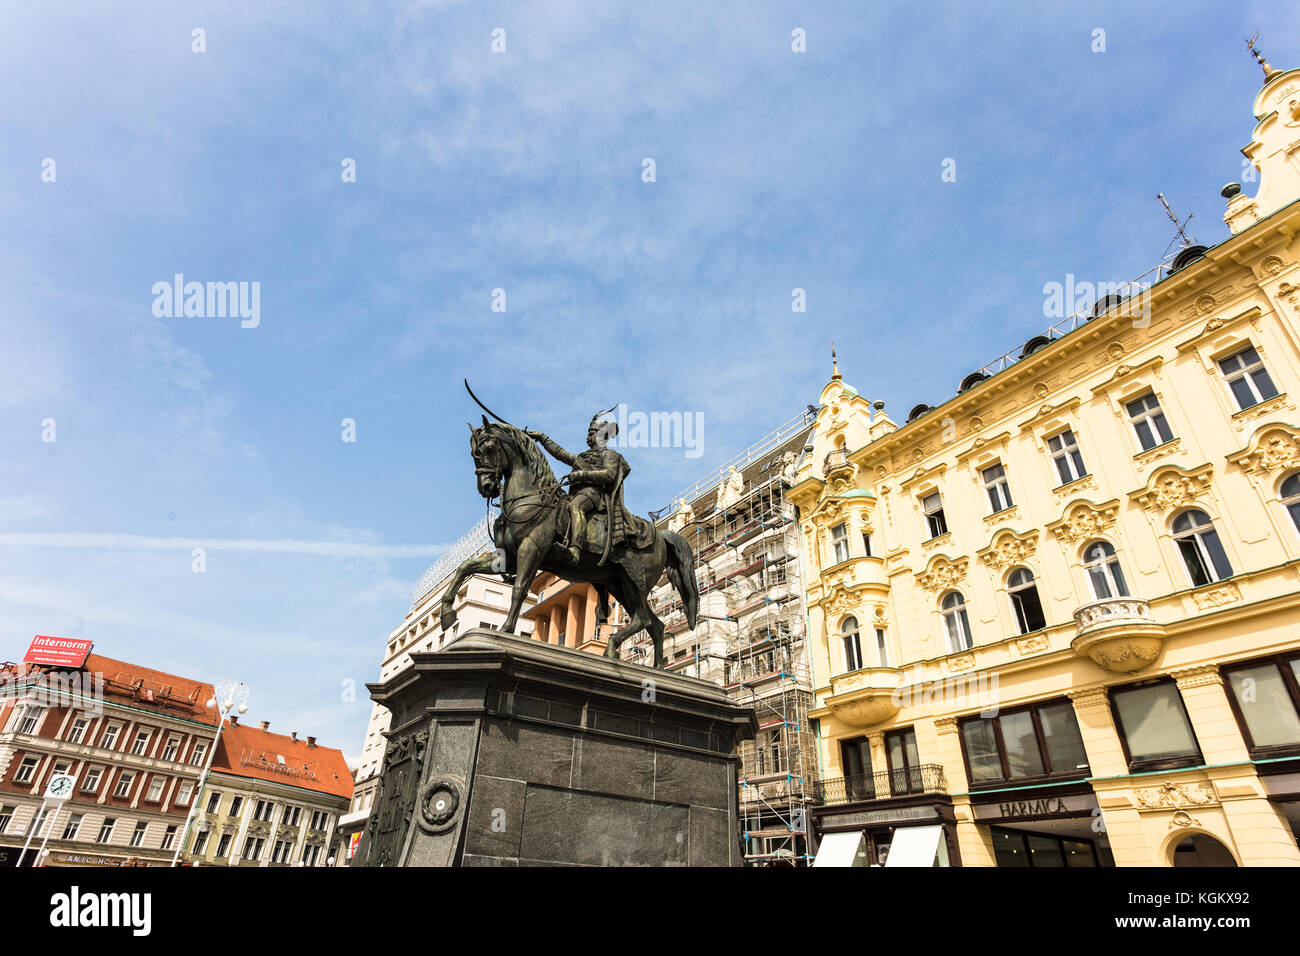 Zagreb, Croatie - août 28, 2017 : le ban jelacic statue cheval a donner le nom de la place dans le coeur de la vieille ville de Zagreb en Croatie cit capital Banque D'Images